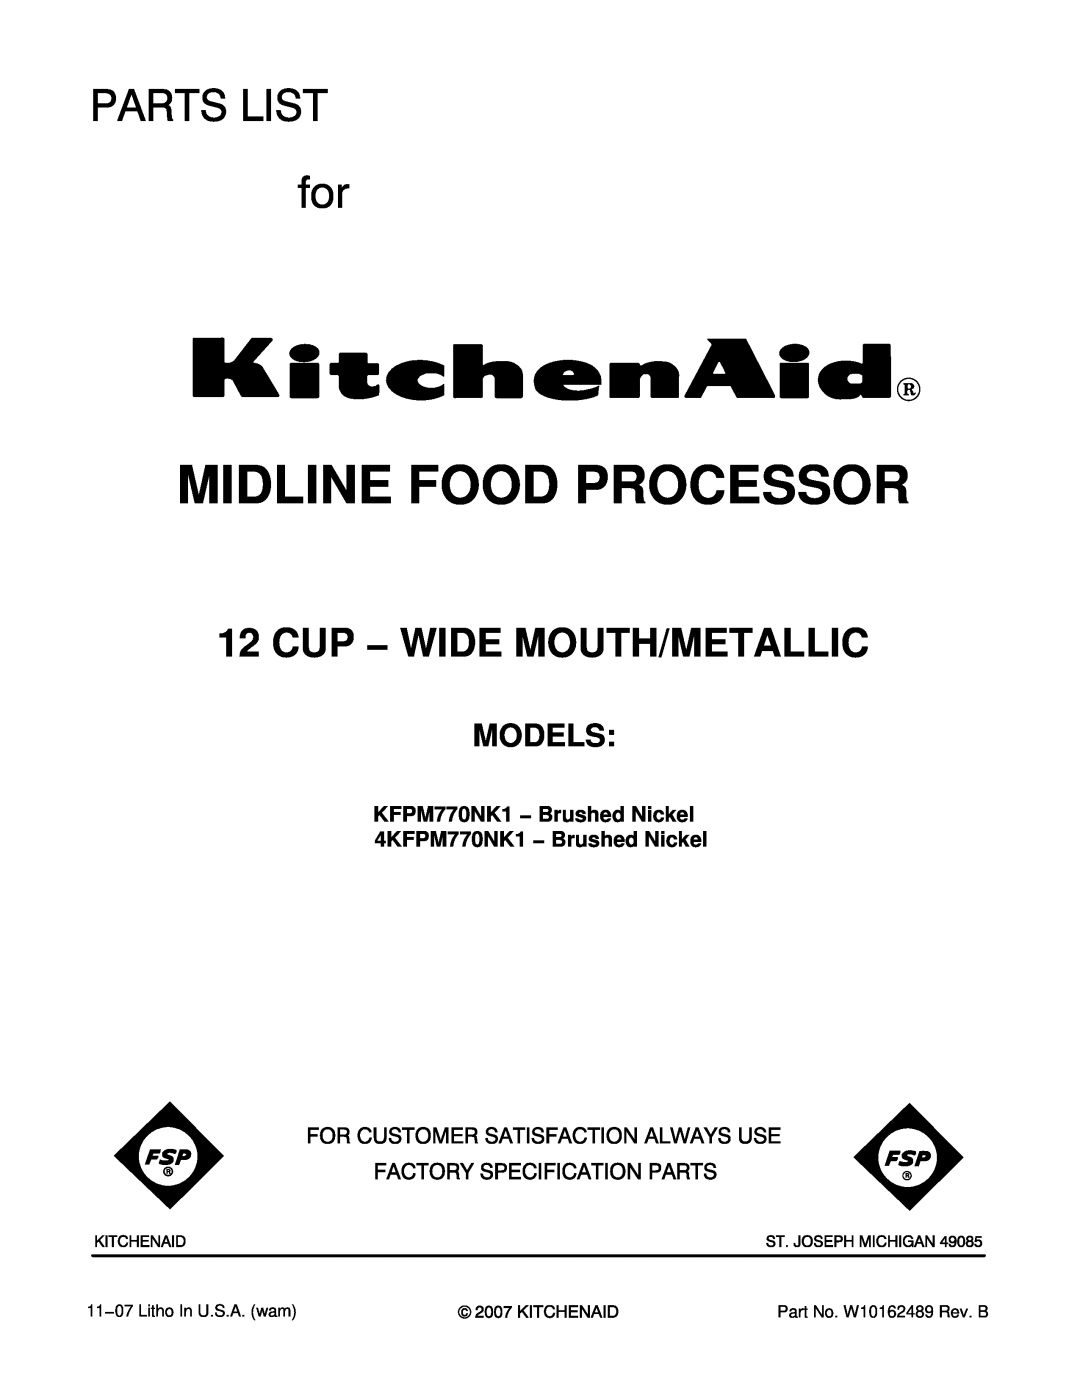 KitchenAid manual Models, KFPM770NK1 − Brushed Nickel 4KFPM770NK1 − Brushed Nickel, Midline Food Processor 